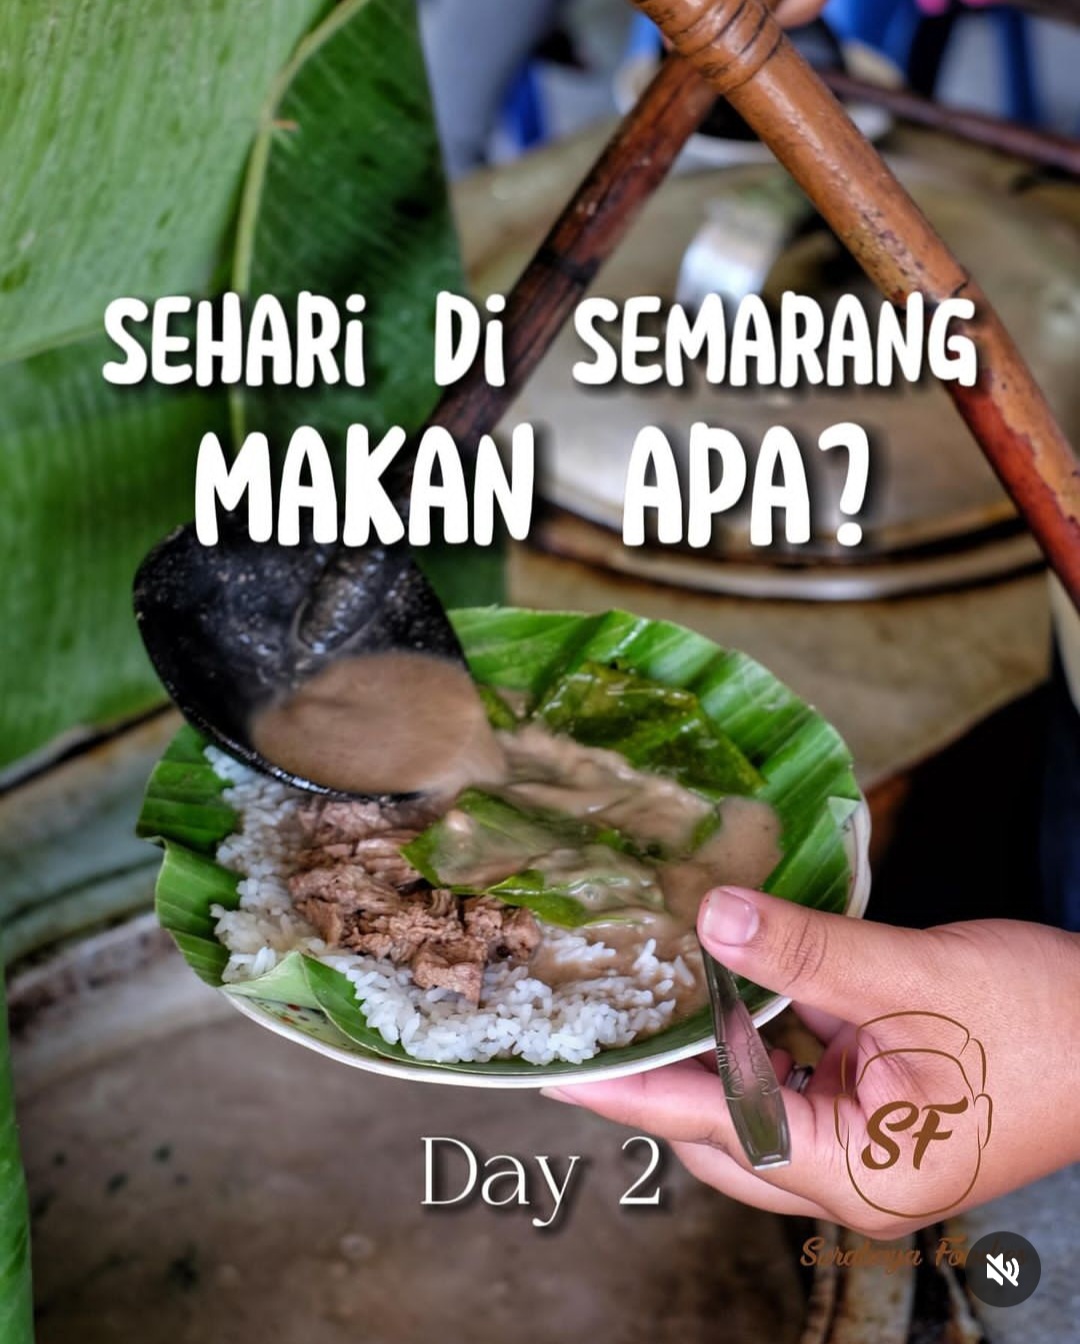 Kulineran di Semarang Makan Apa Saja? Berikut 5 Makanan Khas yang Bisa Kamu Nikmati 